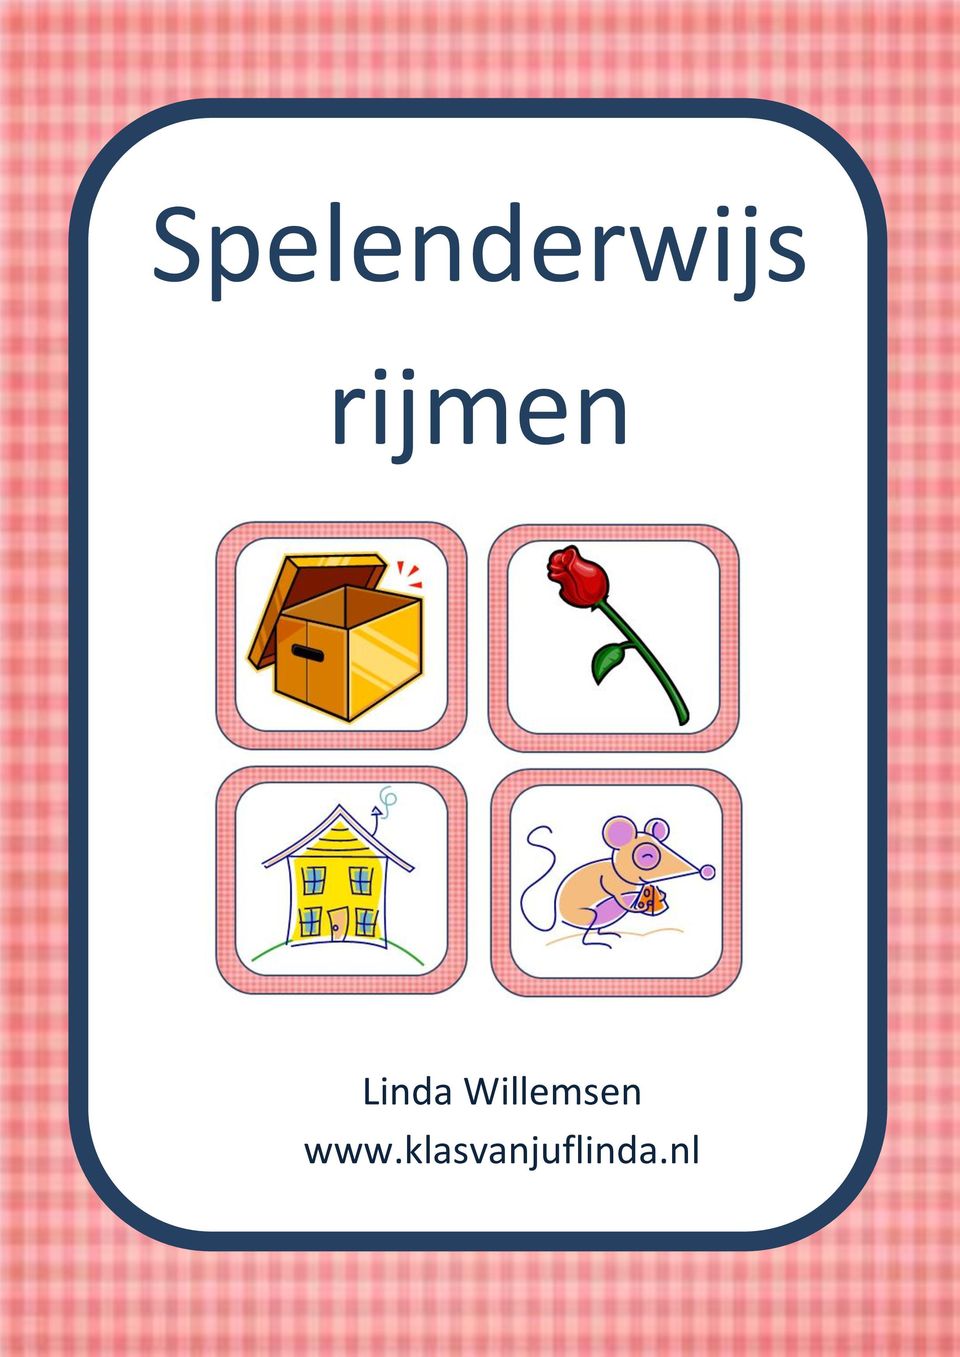 Betere Spelenderwijs rijmen. Linda Willemsen. - PDF Gratis download JS-51